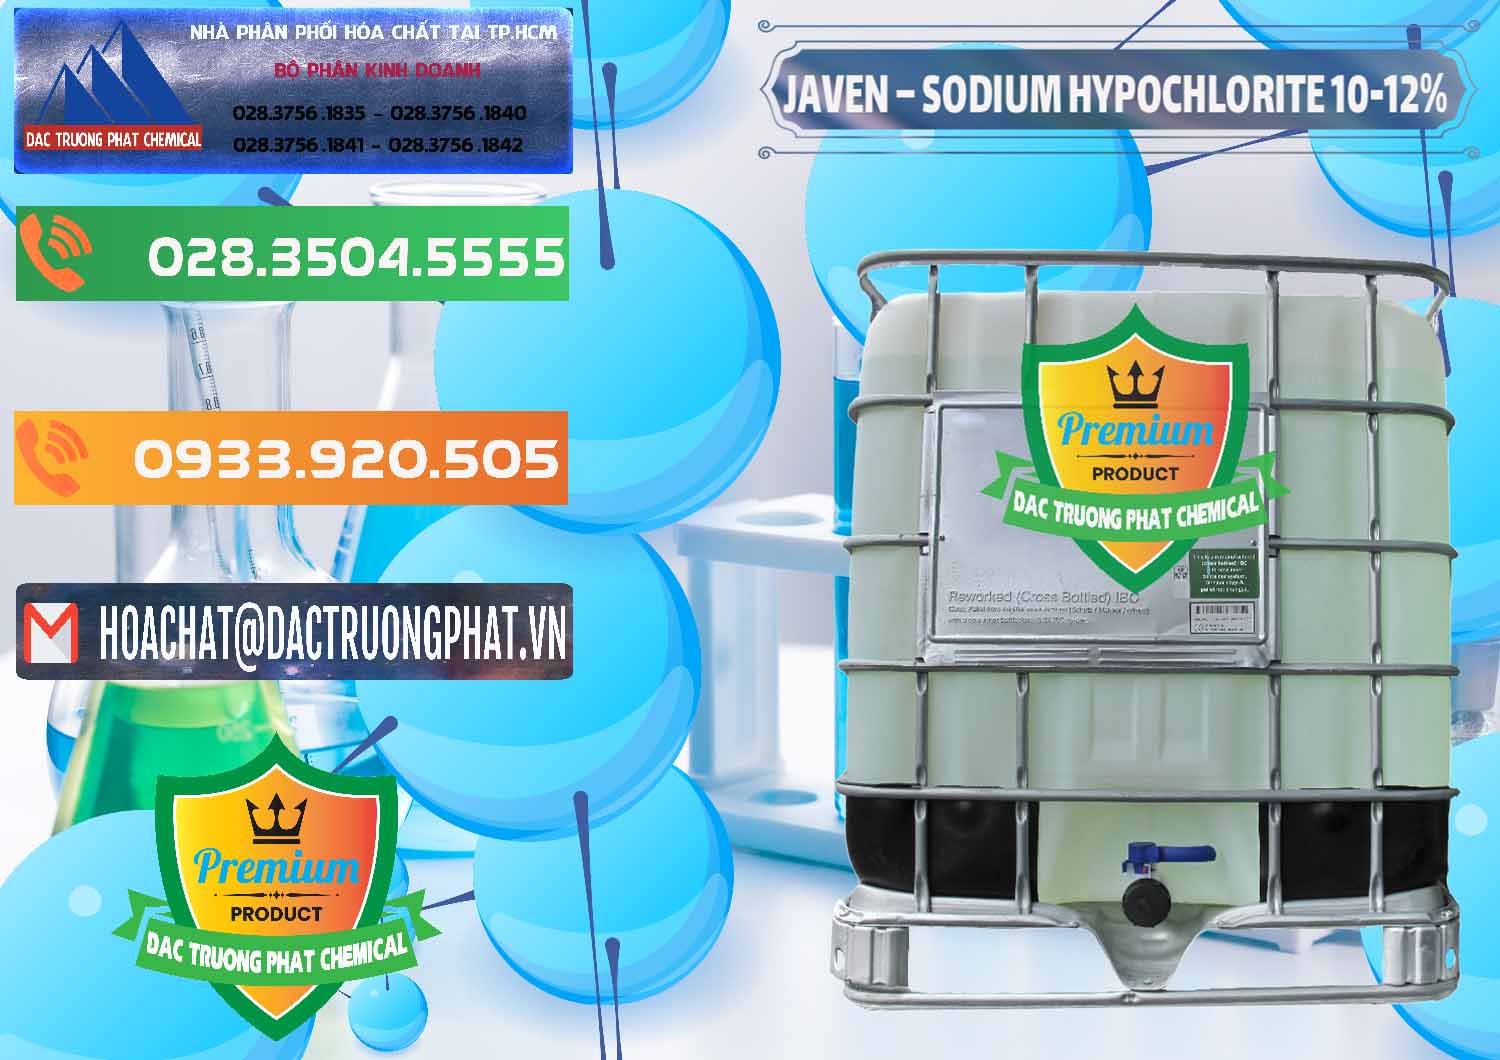 Công ty cung ứng và phân phối Javen - Sodium Hypochlorite 10-12% Việt Nam - 0188 - Nhà phân phối & cung ứng hóa chất tại TP.HCM - hoachatxulynuoc.com.vn